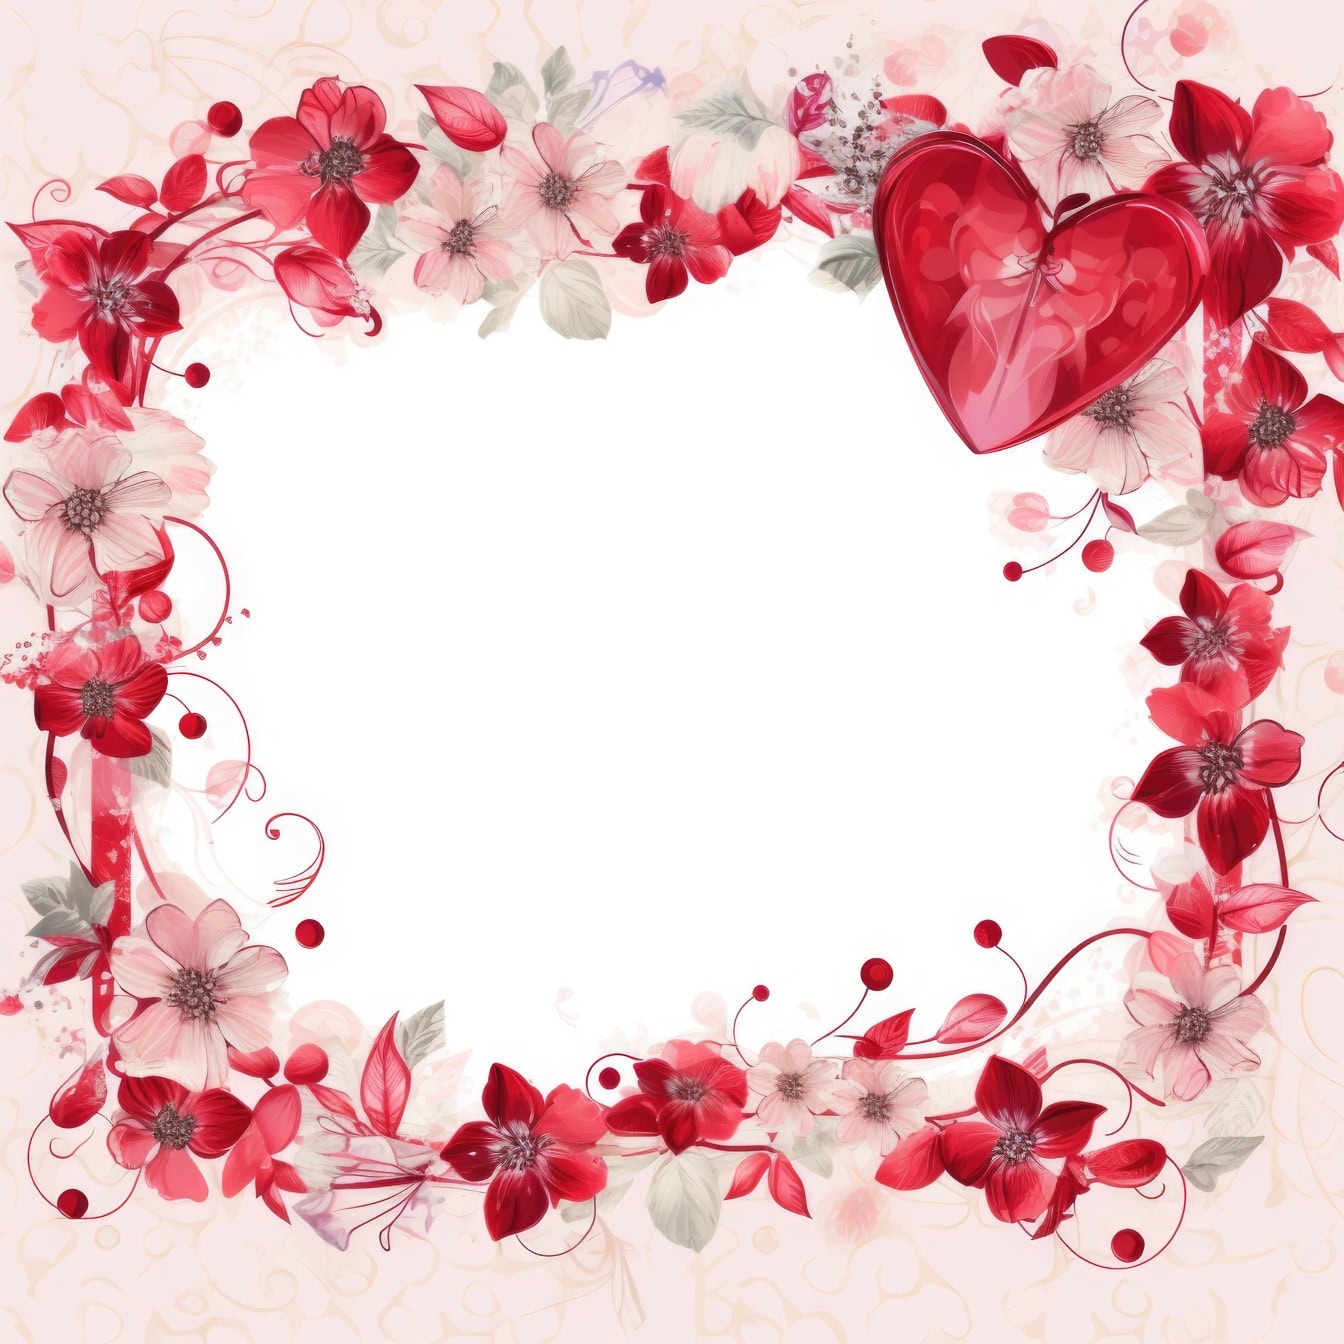 Modèle de carte d’invitation romantique floral pour la Saint-Valentin avec un cadre de fleurs et un cœur rouge foncé